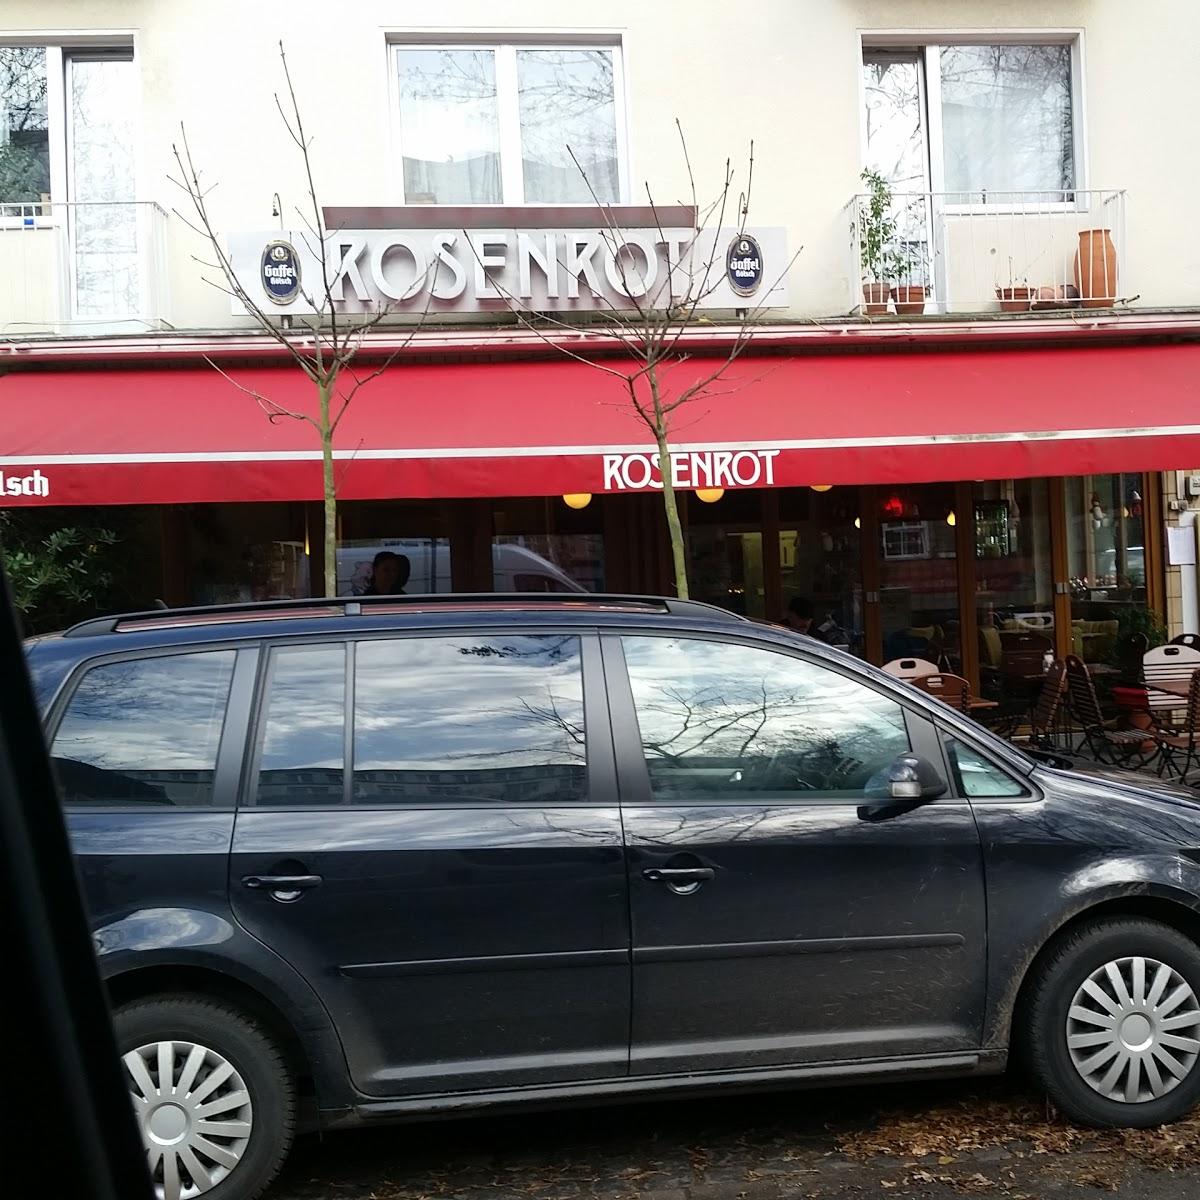 Restaurant "Rosenrot" in Köln